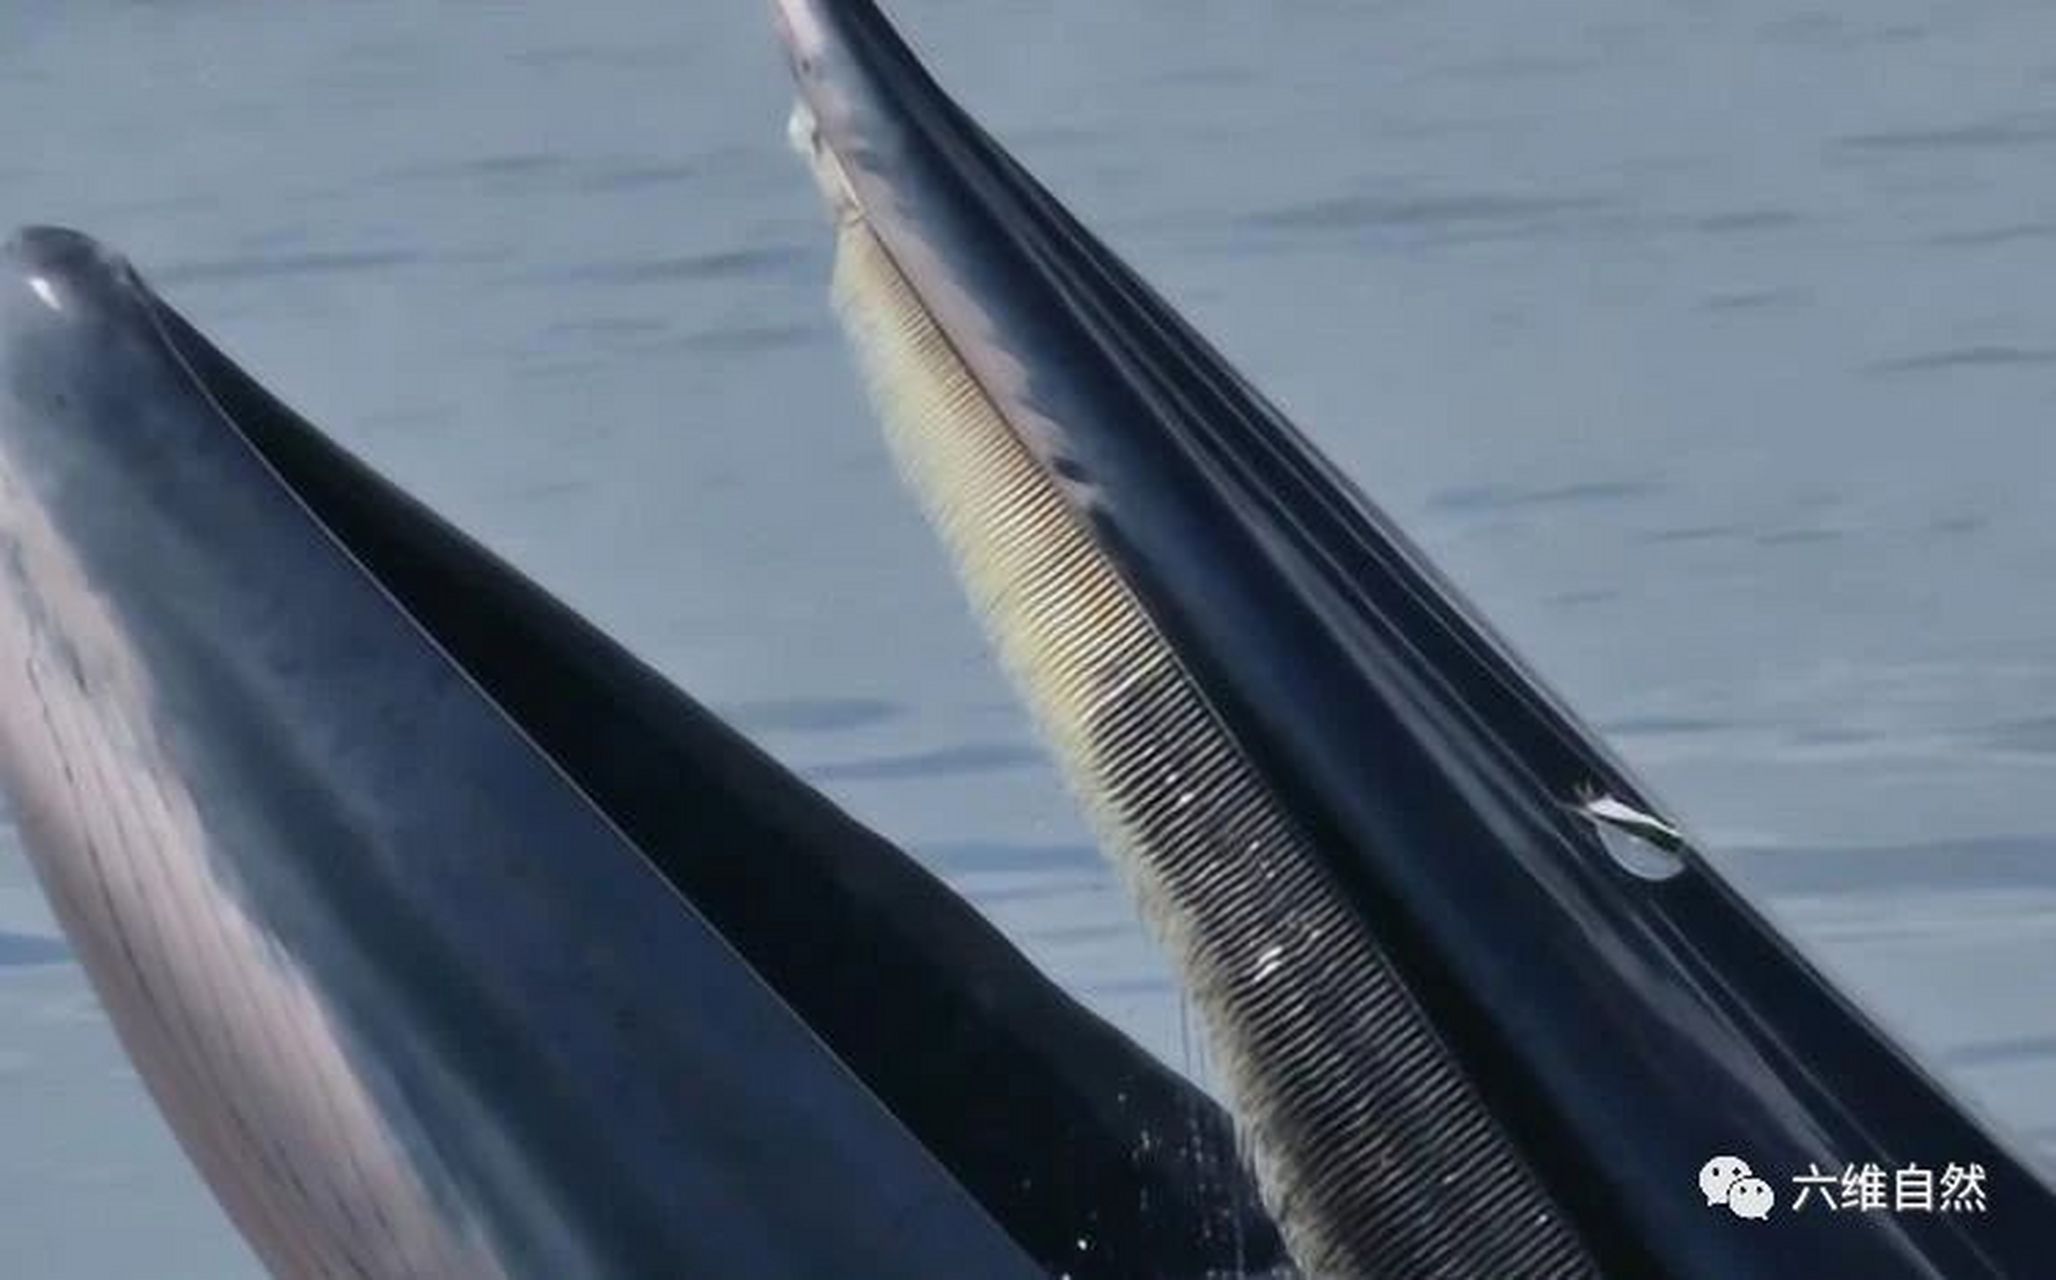 原来鲸鱼的鲸须长这样:在须鲸中,它们的吞食方式一般是过滤式的,以